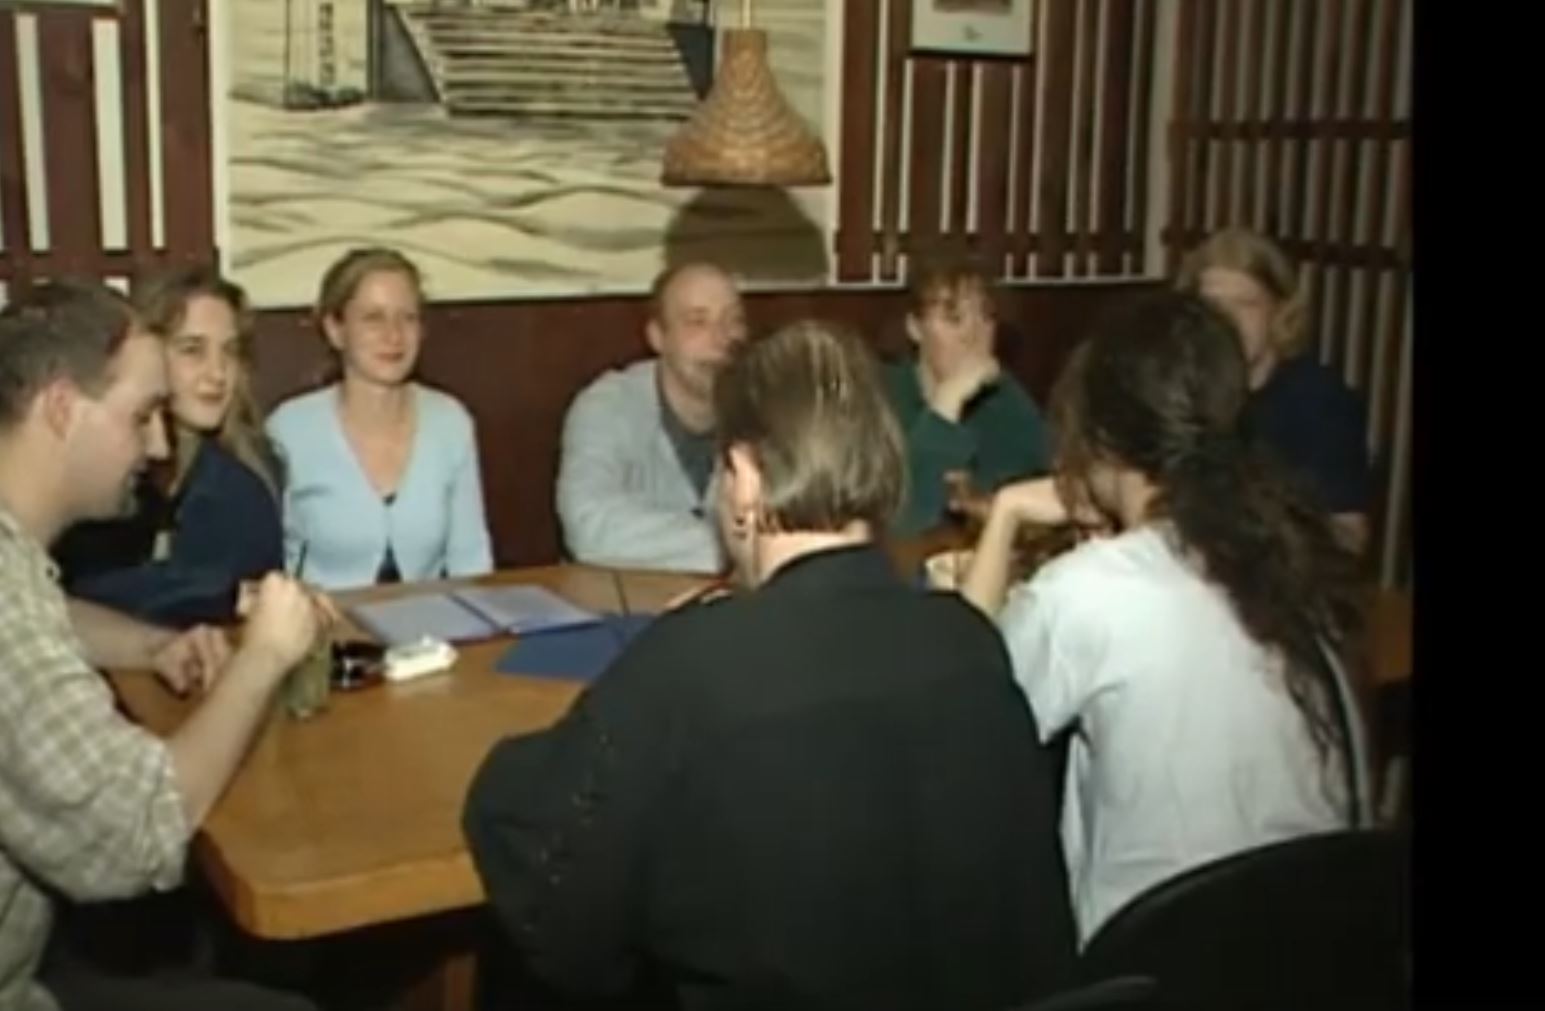 Foto: Startbild Video Studentenwerk, Personen an einem Tisch